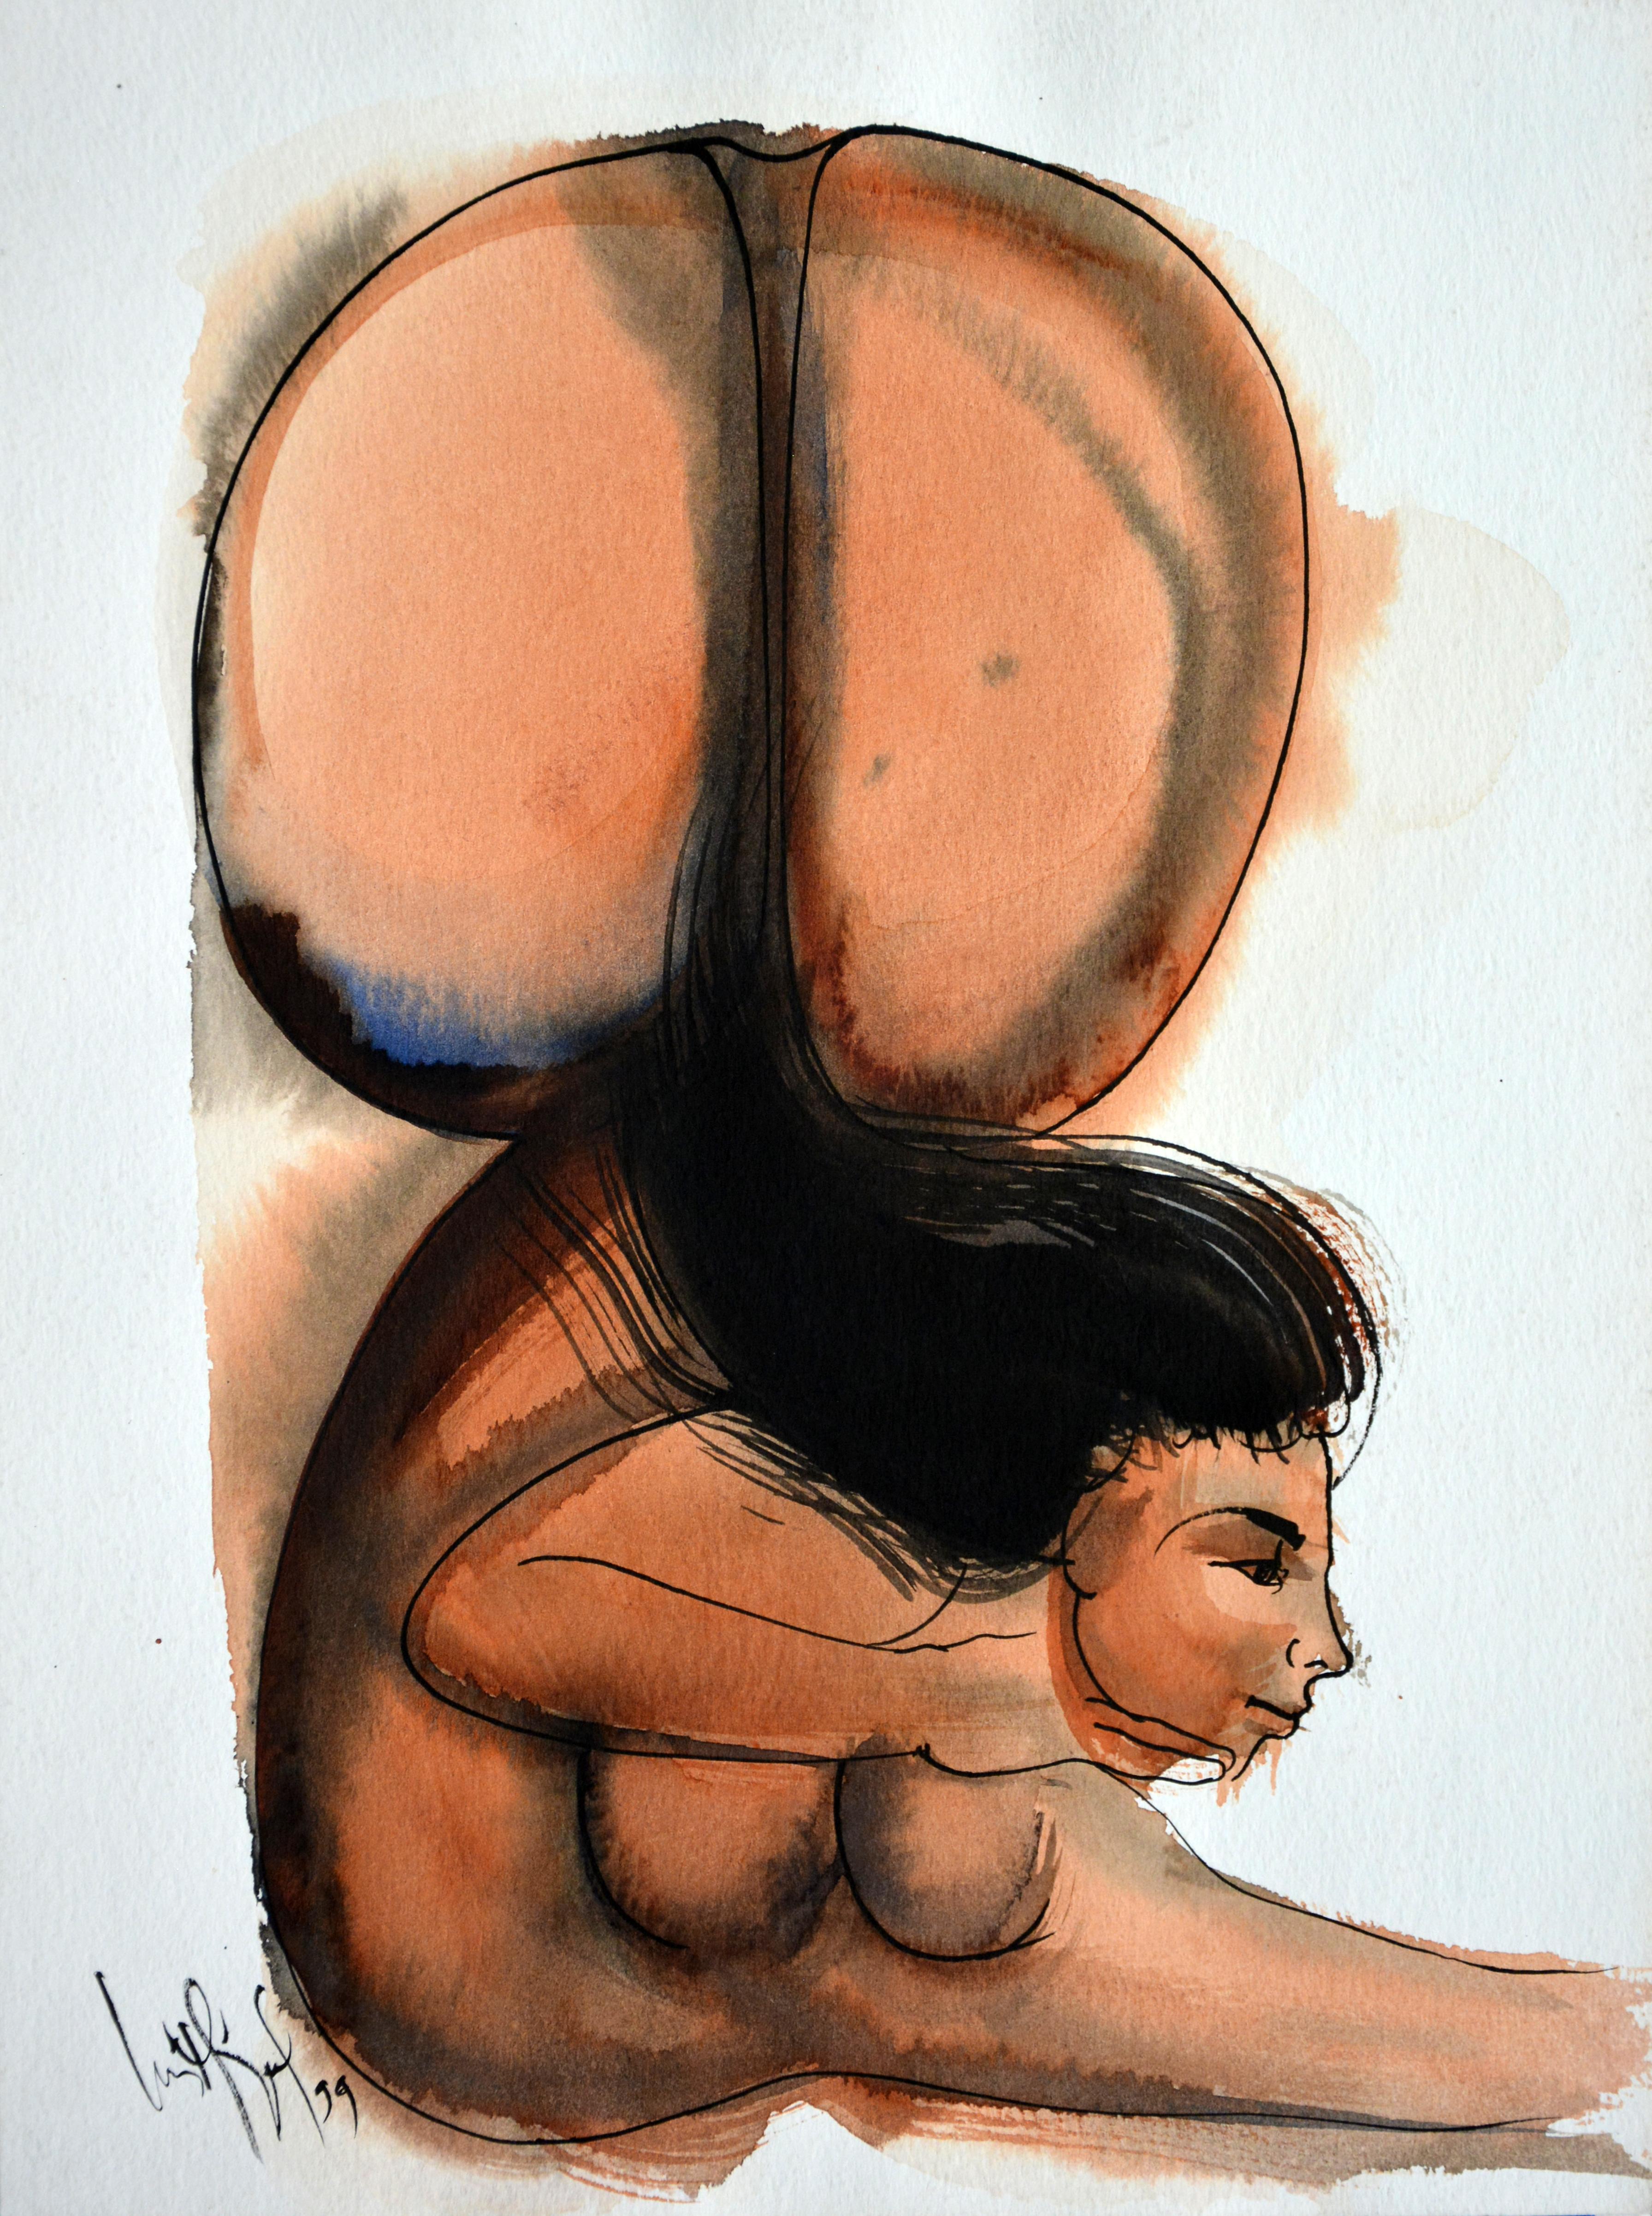 Luis Miguel Valdes, ¨Caida¨, 1999, Arbeit auf Papier, 15x11 Zoll